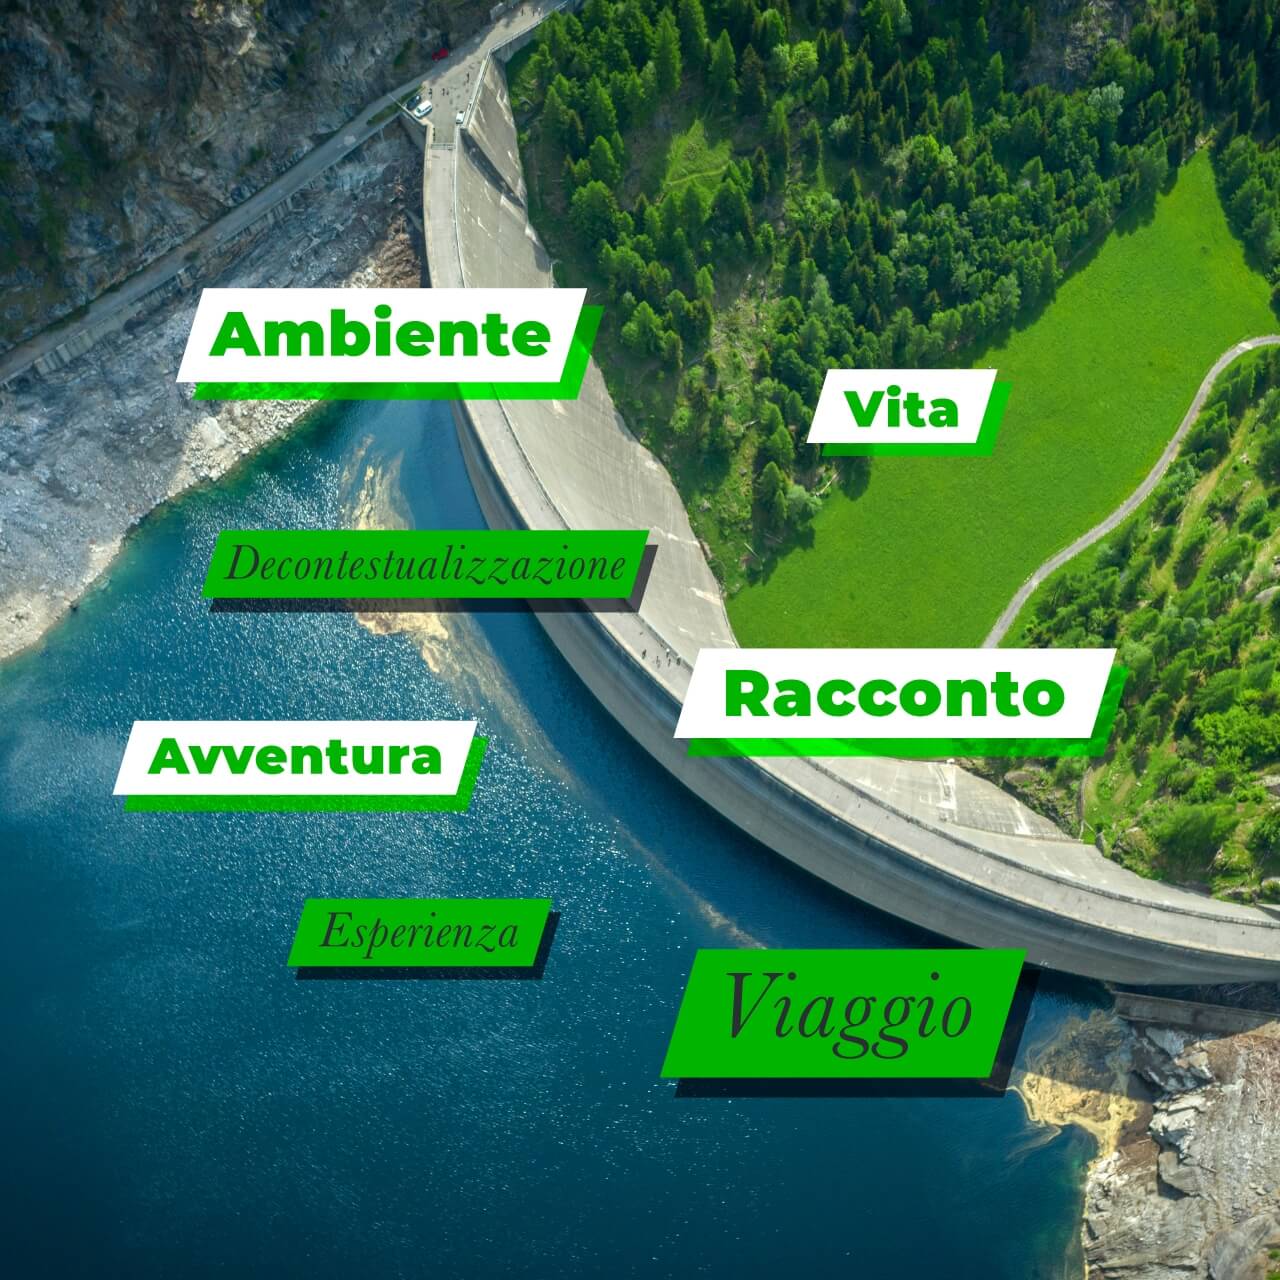 Un viaggio in un’Italia più verde - L’idea, creare una web series raccontando il viaggio di due green dreamers